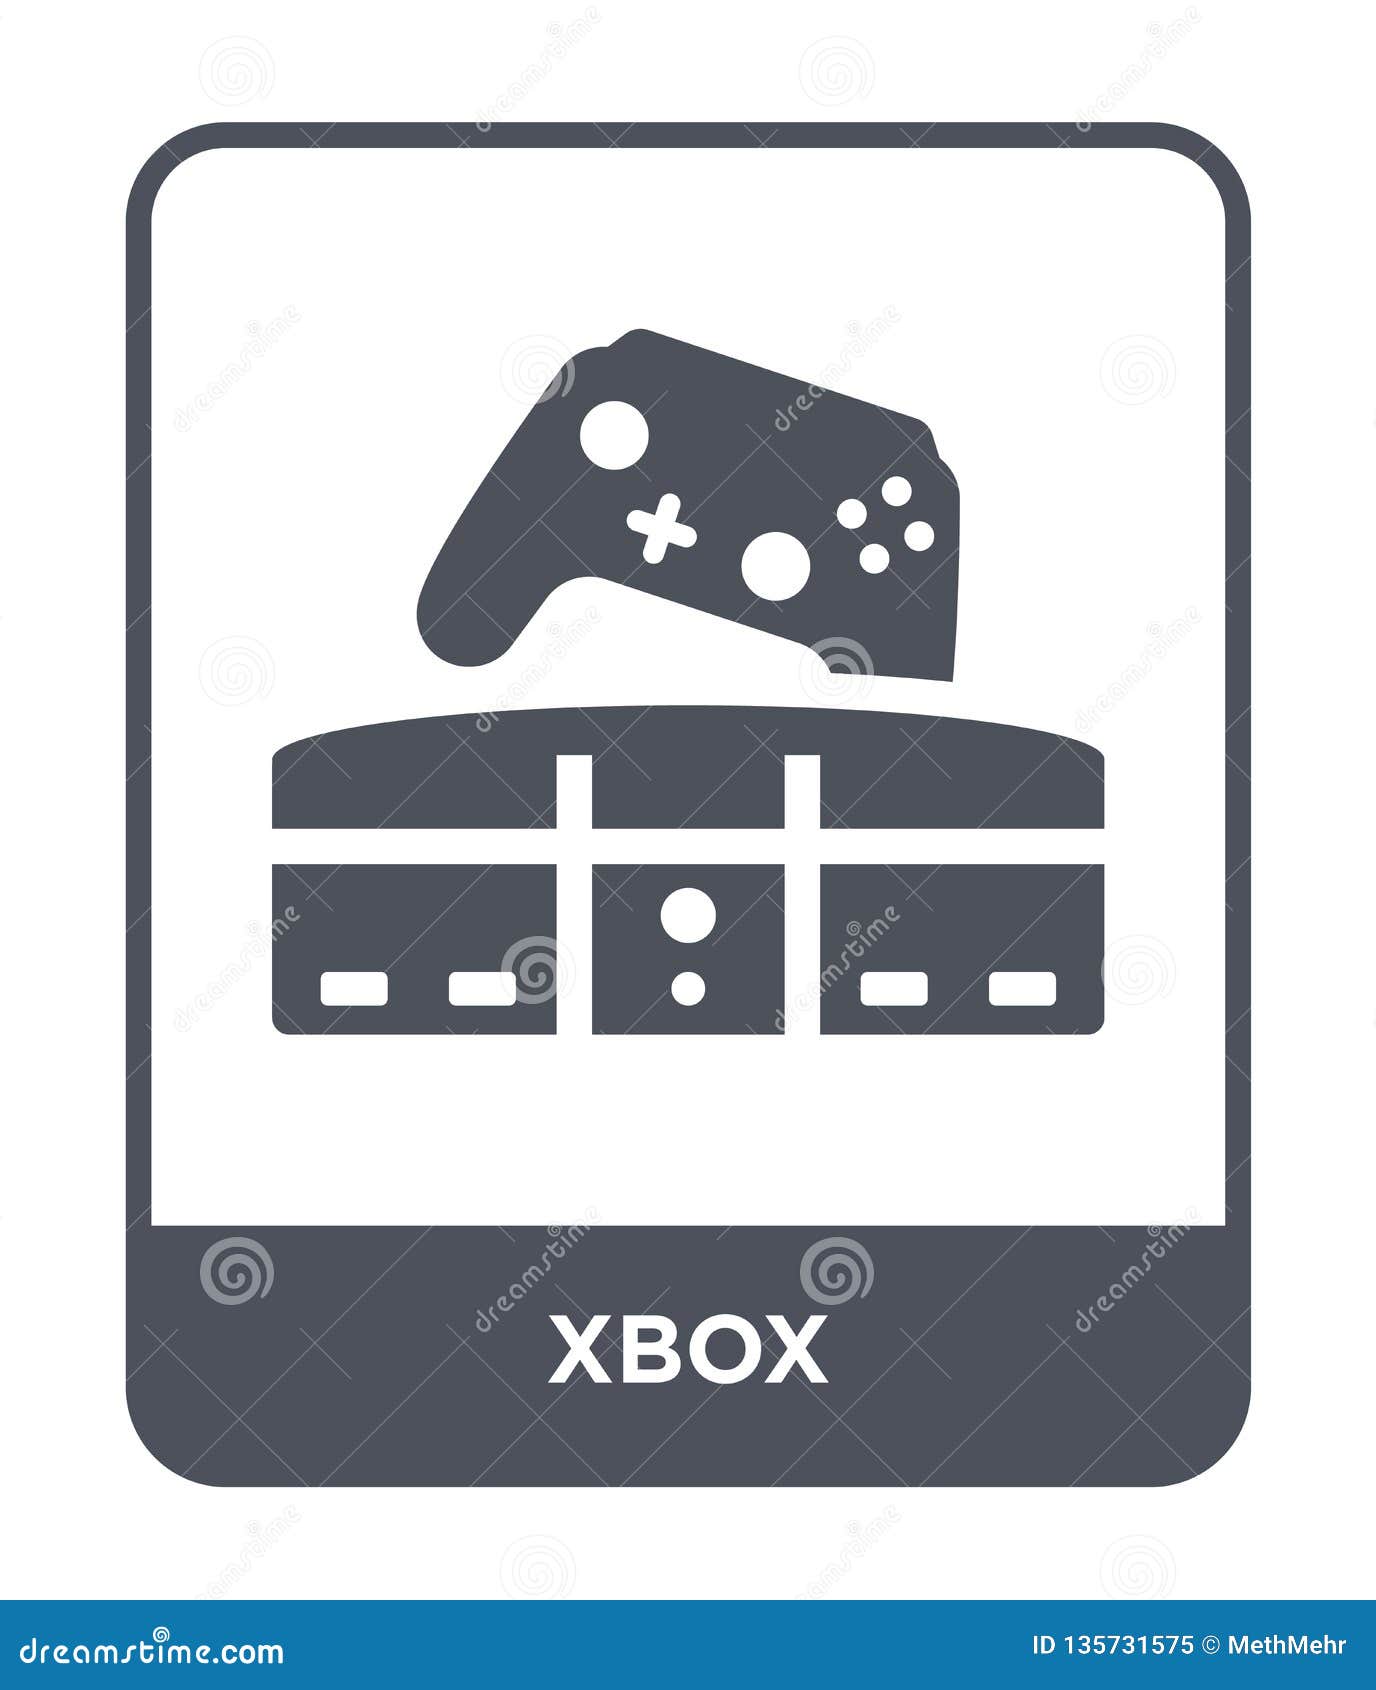 Xbox icon là biểu tượng được yêu thích và dễ nhận diện trong cộng đồng game thủ. Nếu bạn là một fan của Xbox, hãy xem hình ảnh liên quan để cập nhật kiến thức về Xbox icon.